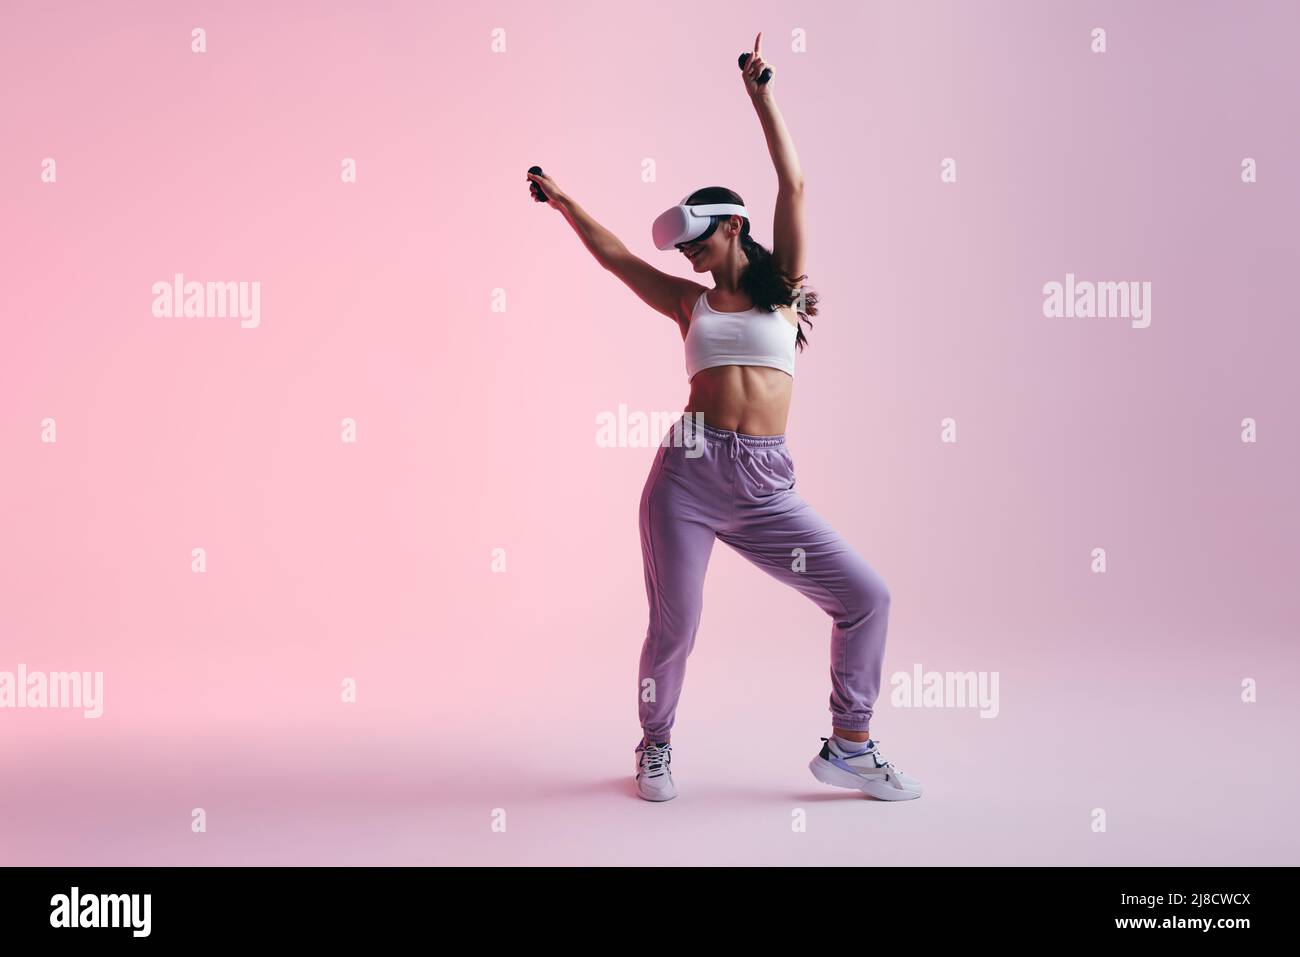 Fröhliche junge Frau, die mit einem Virtual Reality-Headset tanzt. Glückliche junge Frau genießt ihre virtuelle Realität Erfahrung. Frau mit Spaß whil Stockfoto